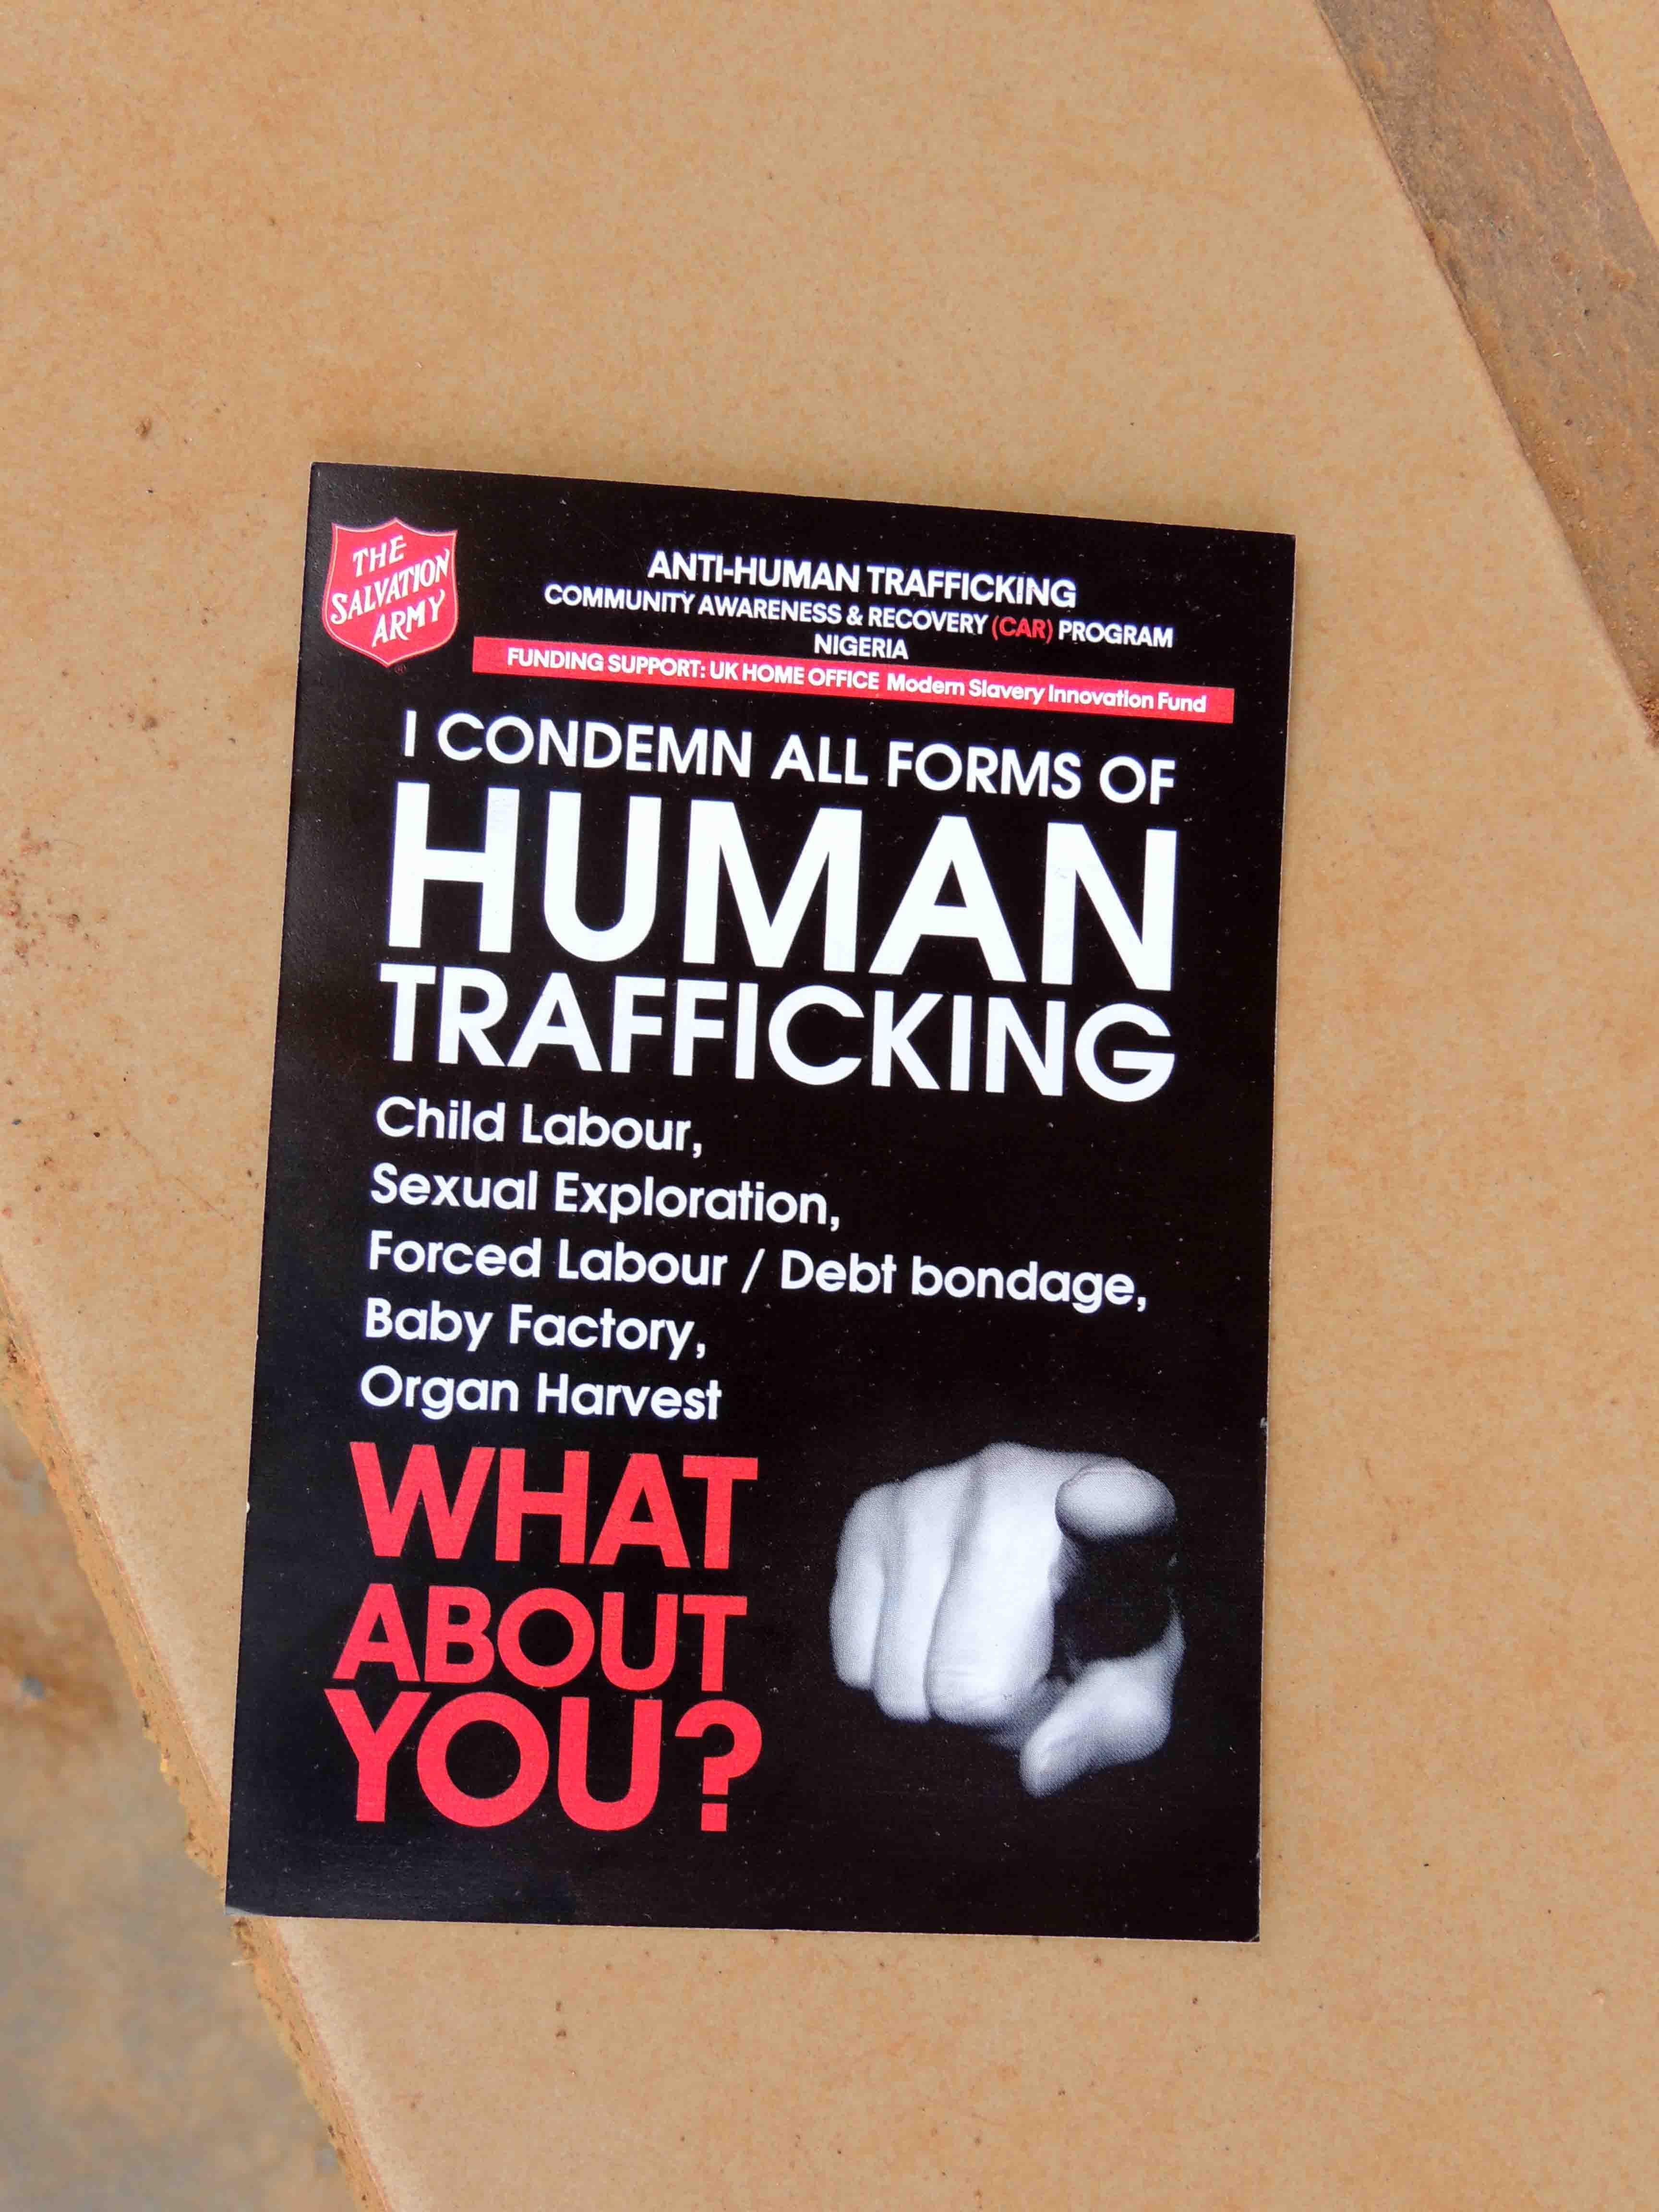 Human trafficking seminar